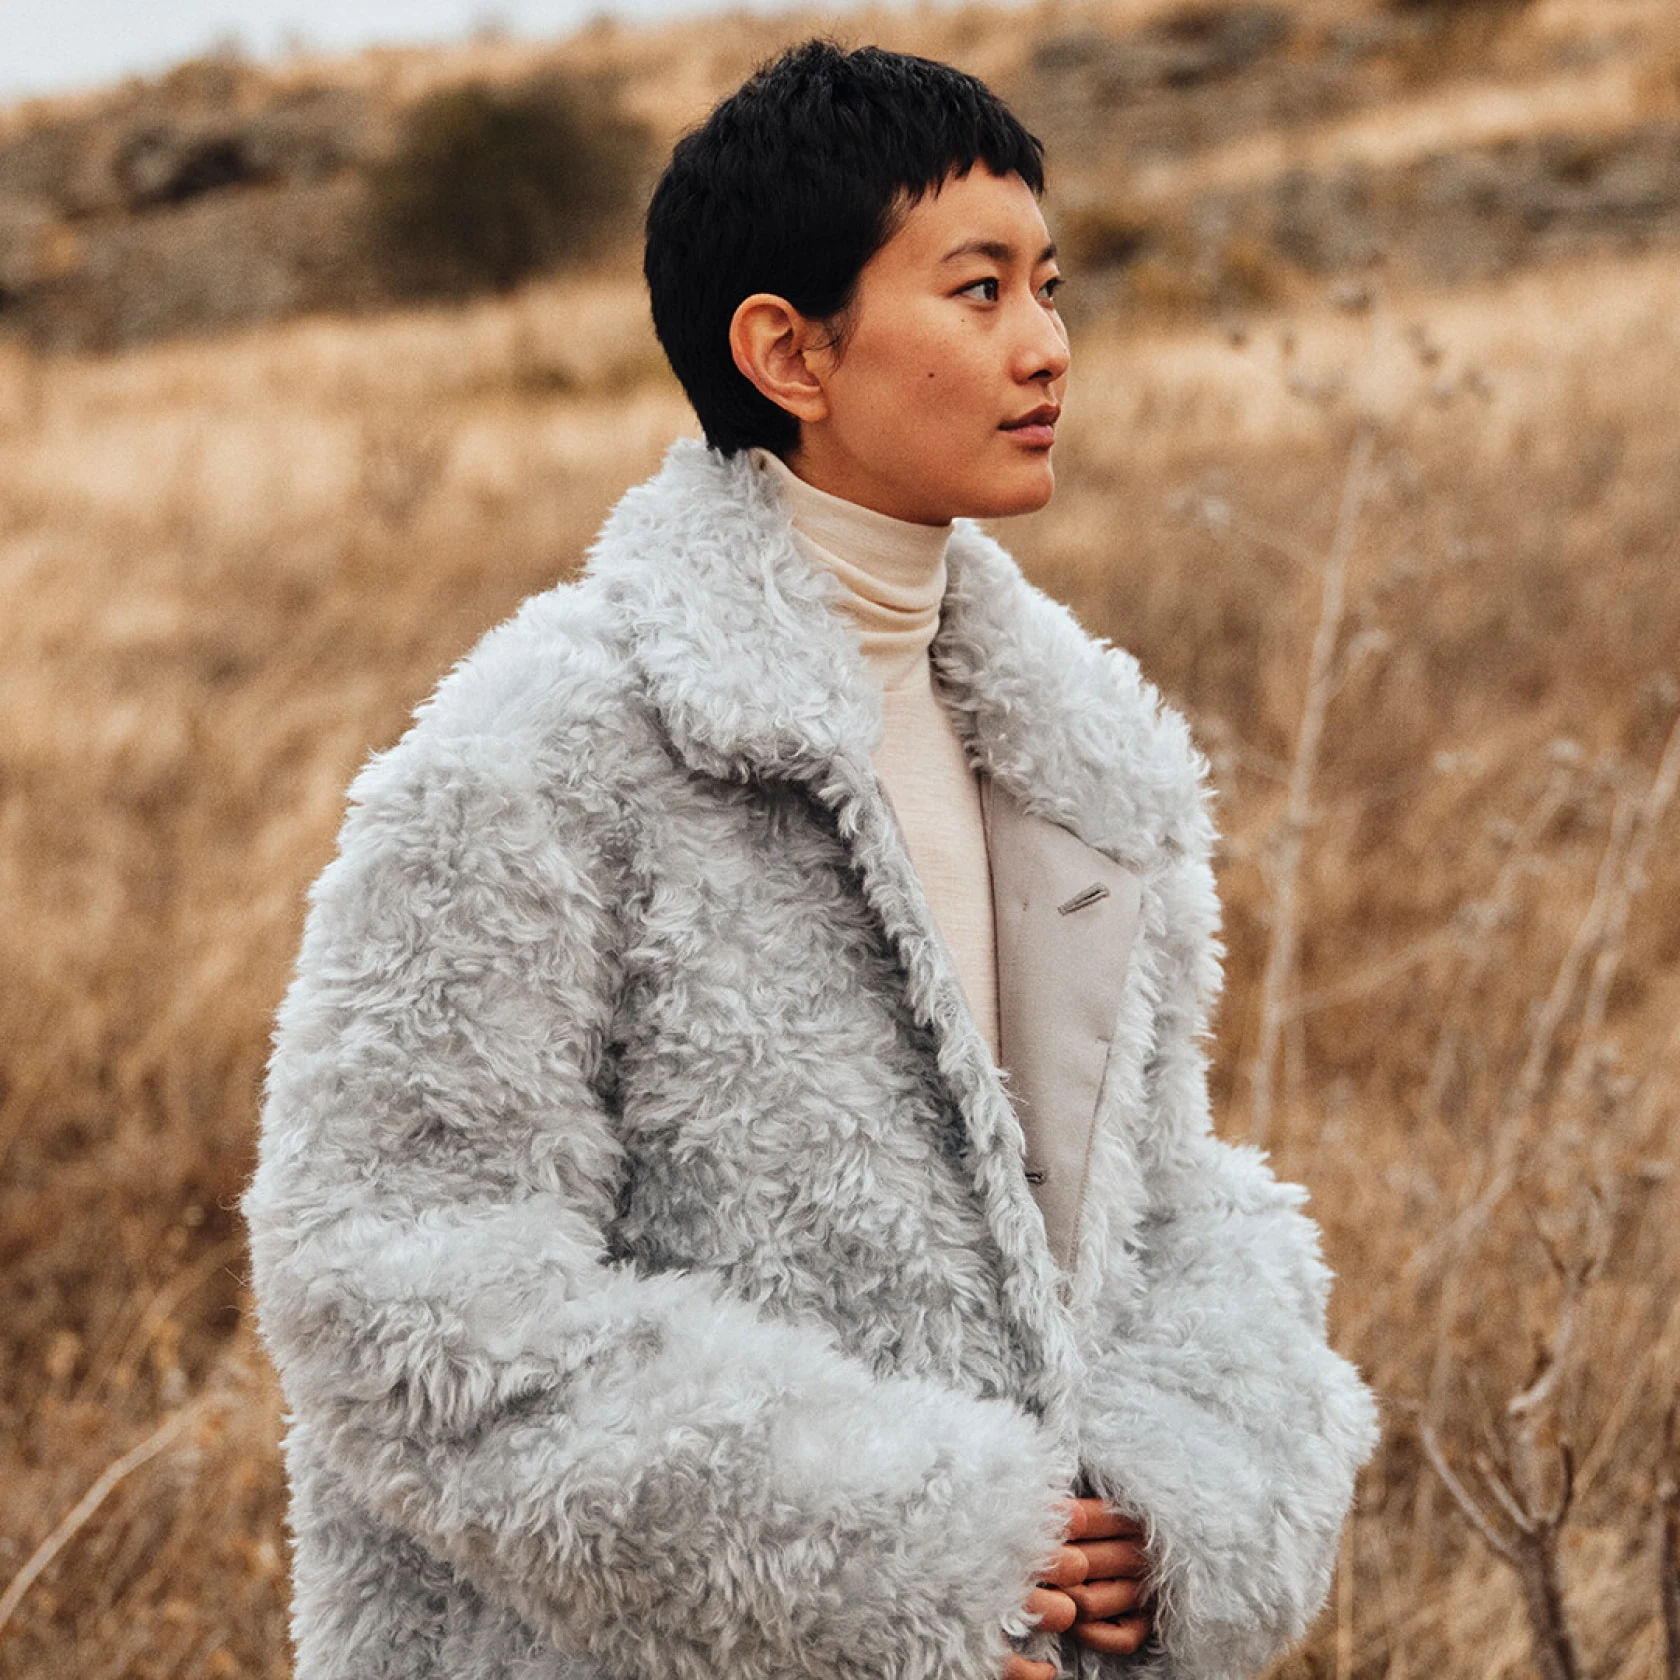 Asiatisches Model mit Pixie-Schnitt modelliert im Weizenfeld und trägt eine flauschige graue Jacke und Rollkragenpullover